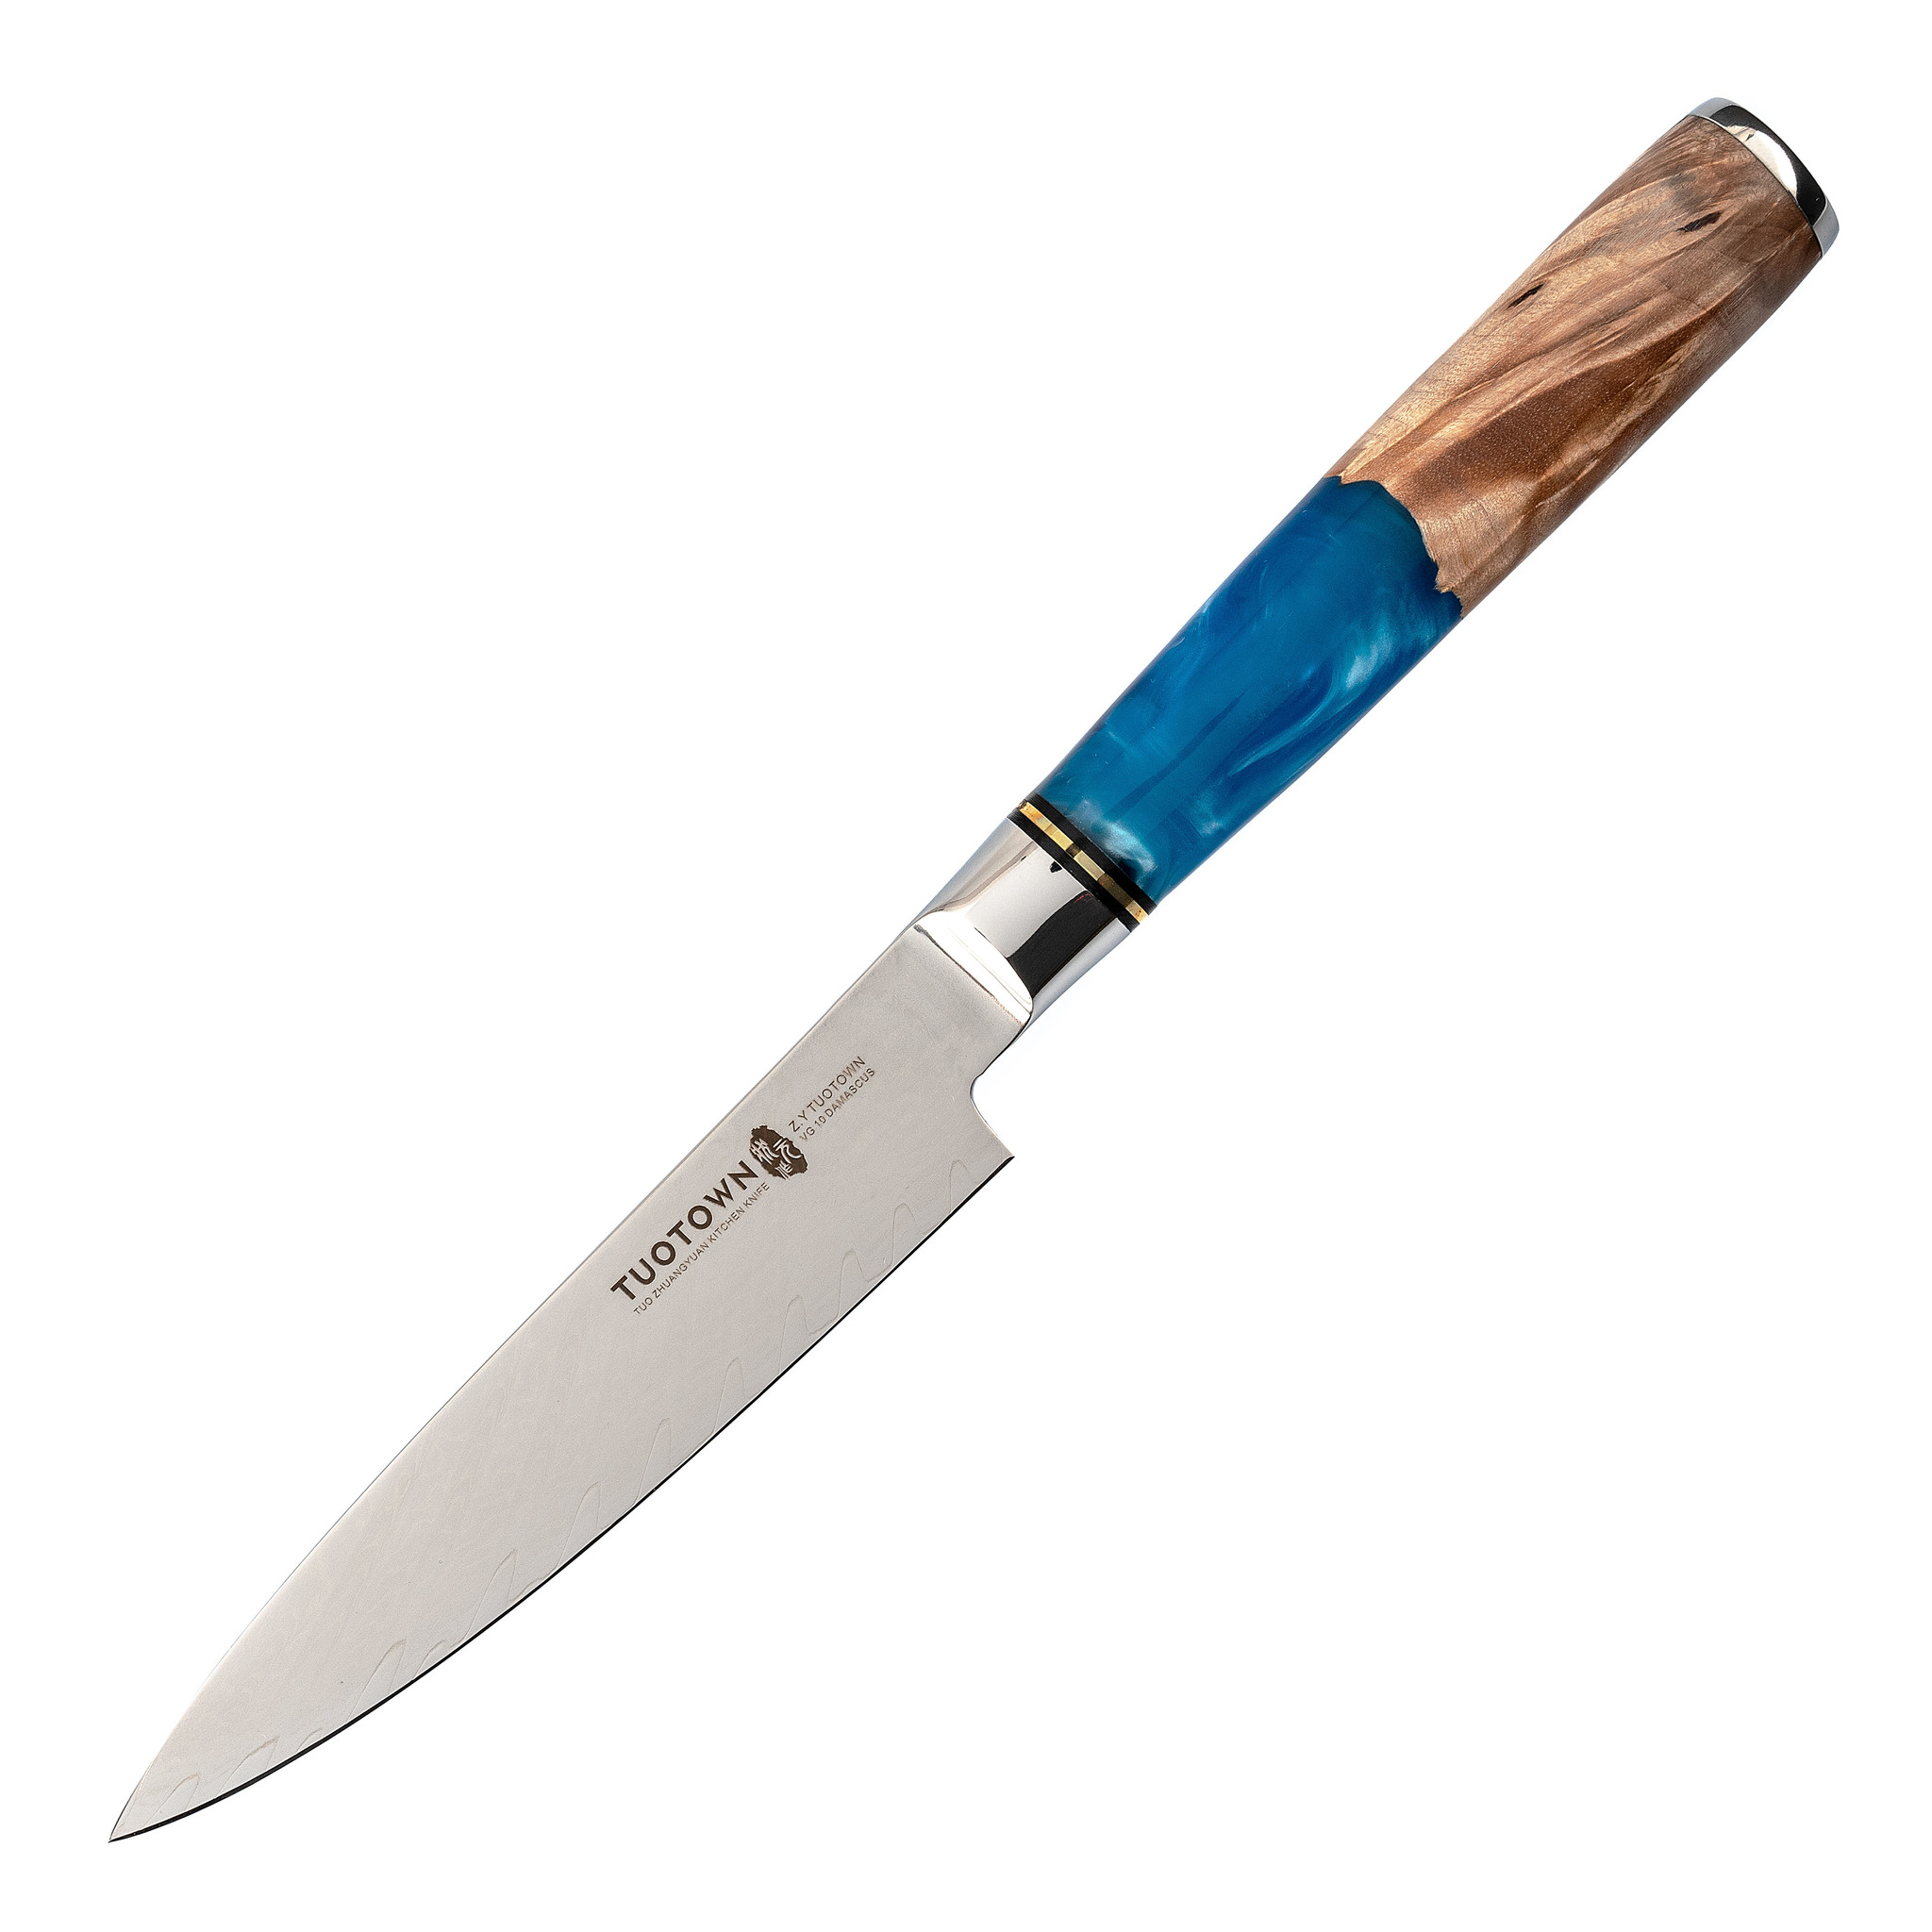 Кухонный универсальный нож Tuotown TWB-D3, сталь VG-10, рукоять дерево/эпоксидка - фото 1